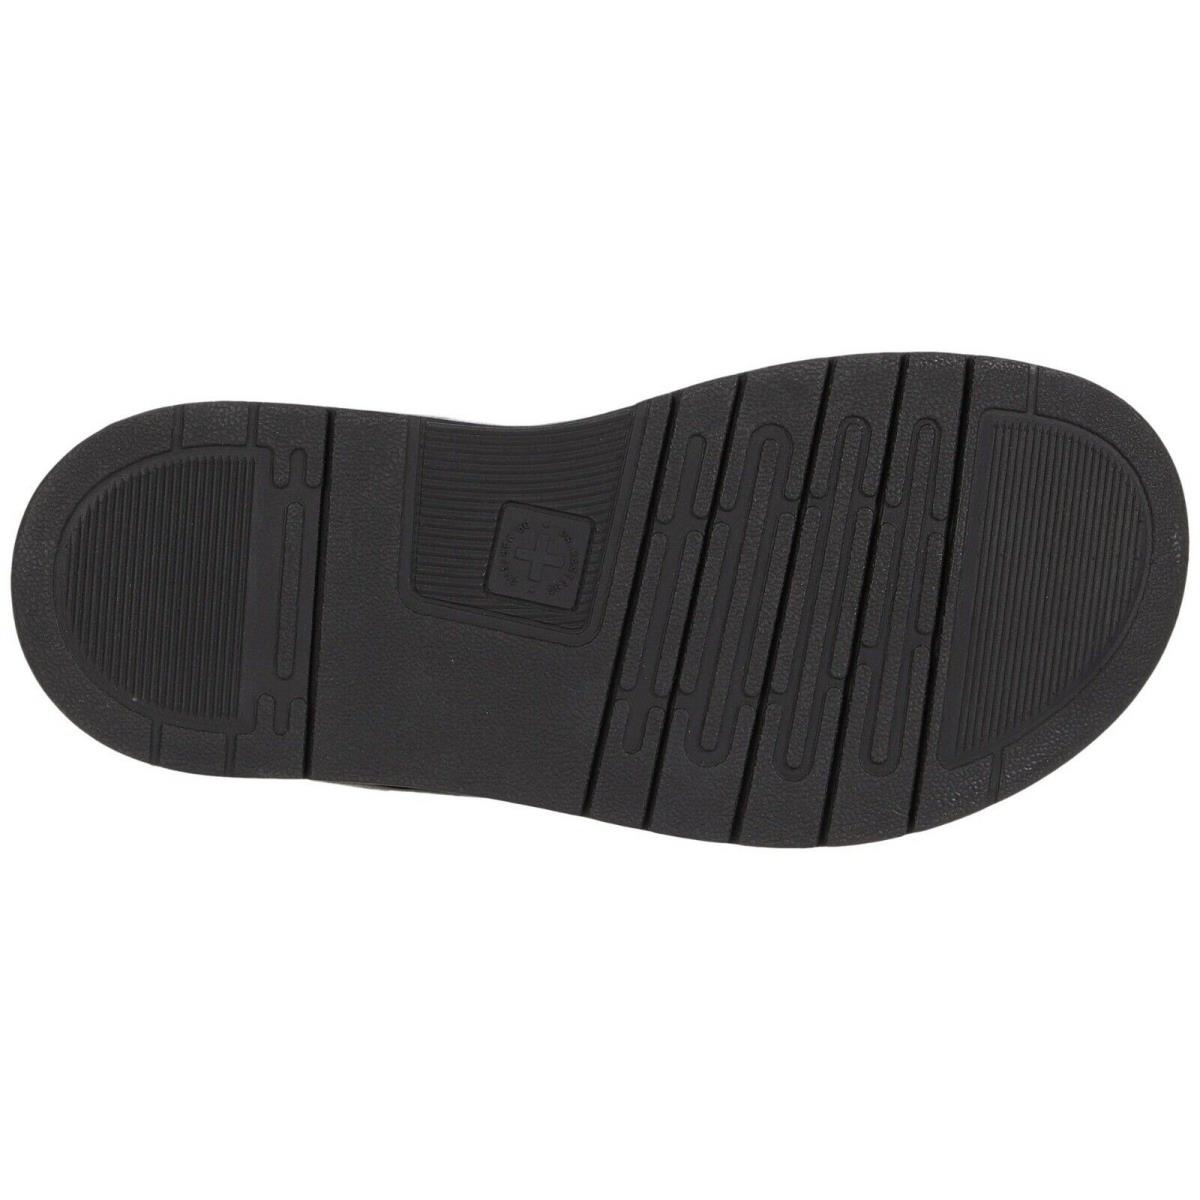 Dr. Martens shoes Open Toe - Black 1